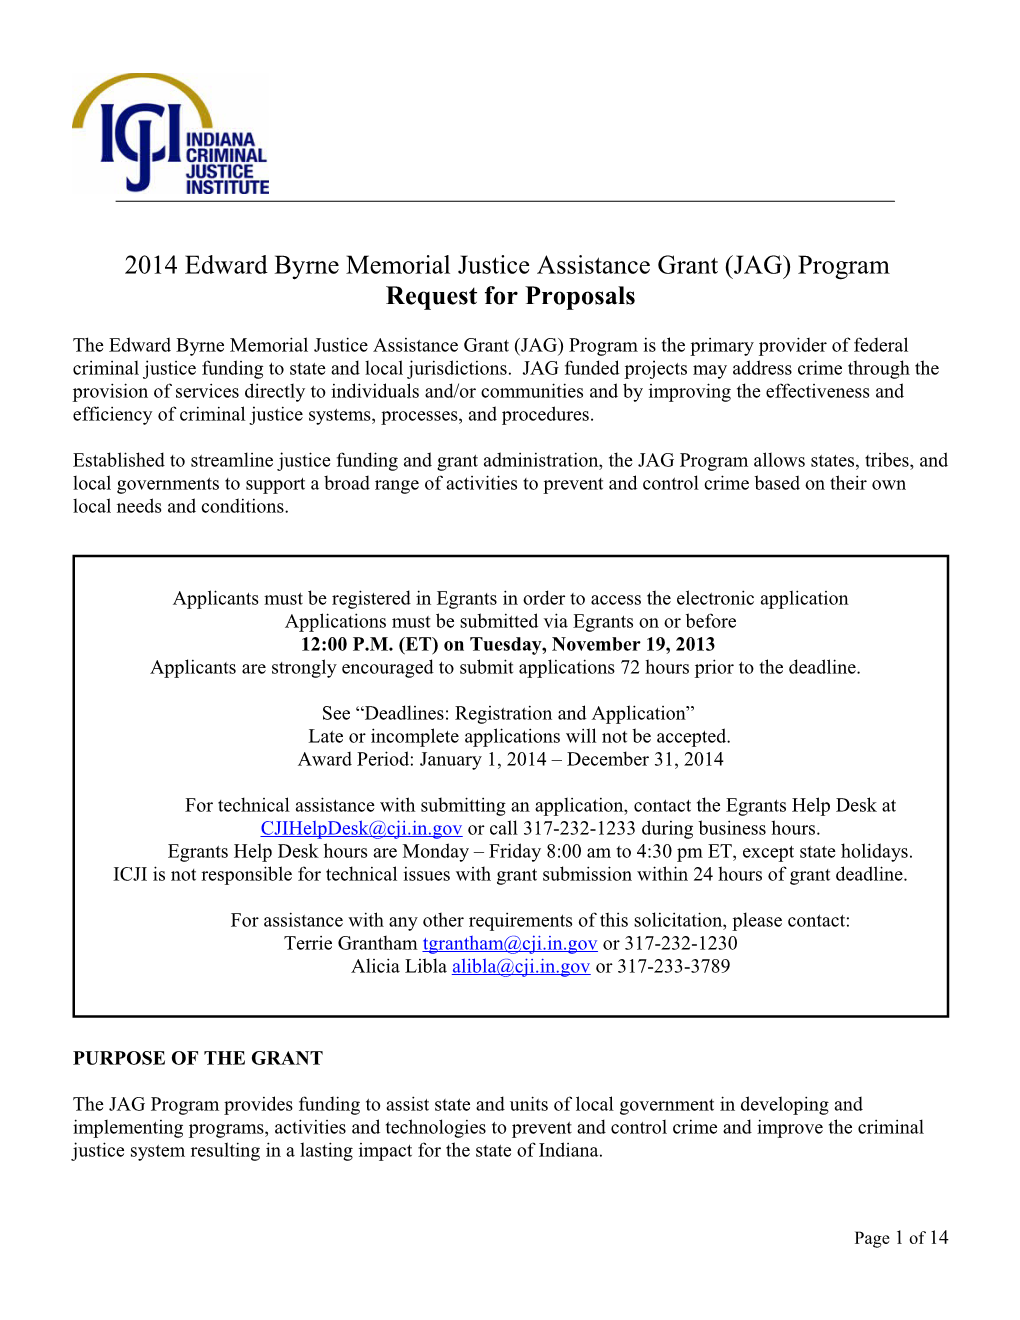 2014 Edward Byrne Memorial Justice Assistance Grant (JAG) Program Request for Proposals